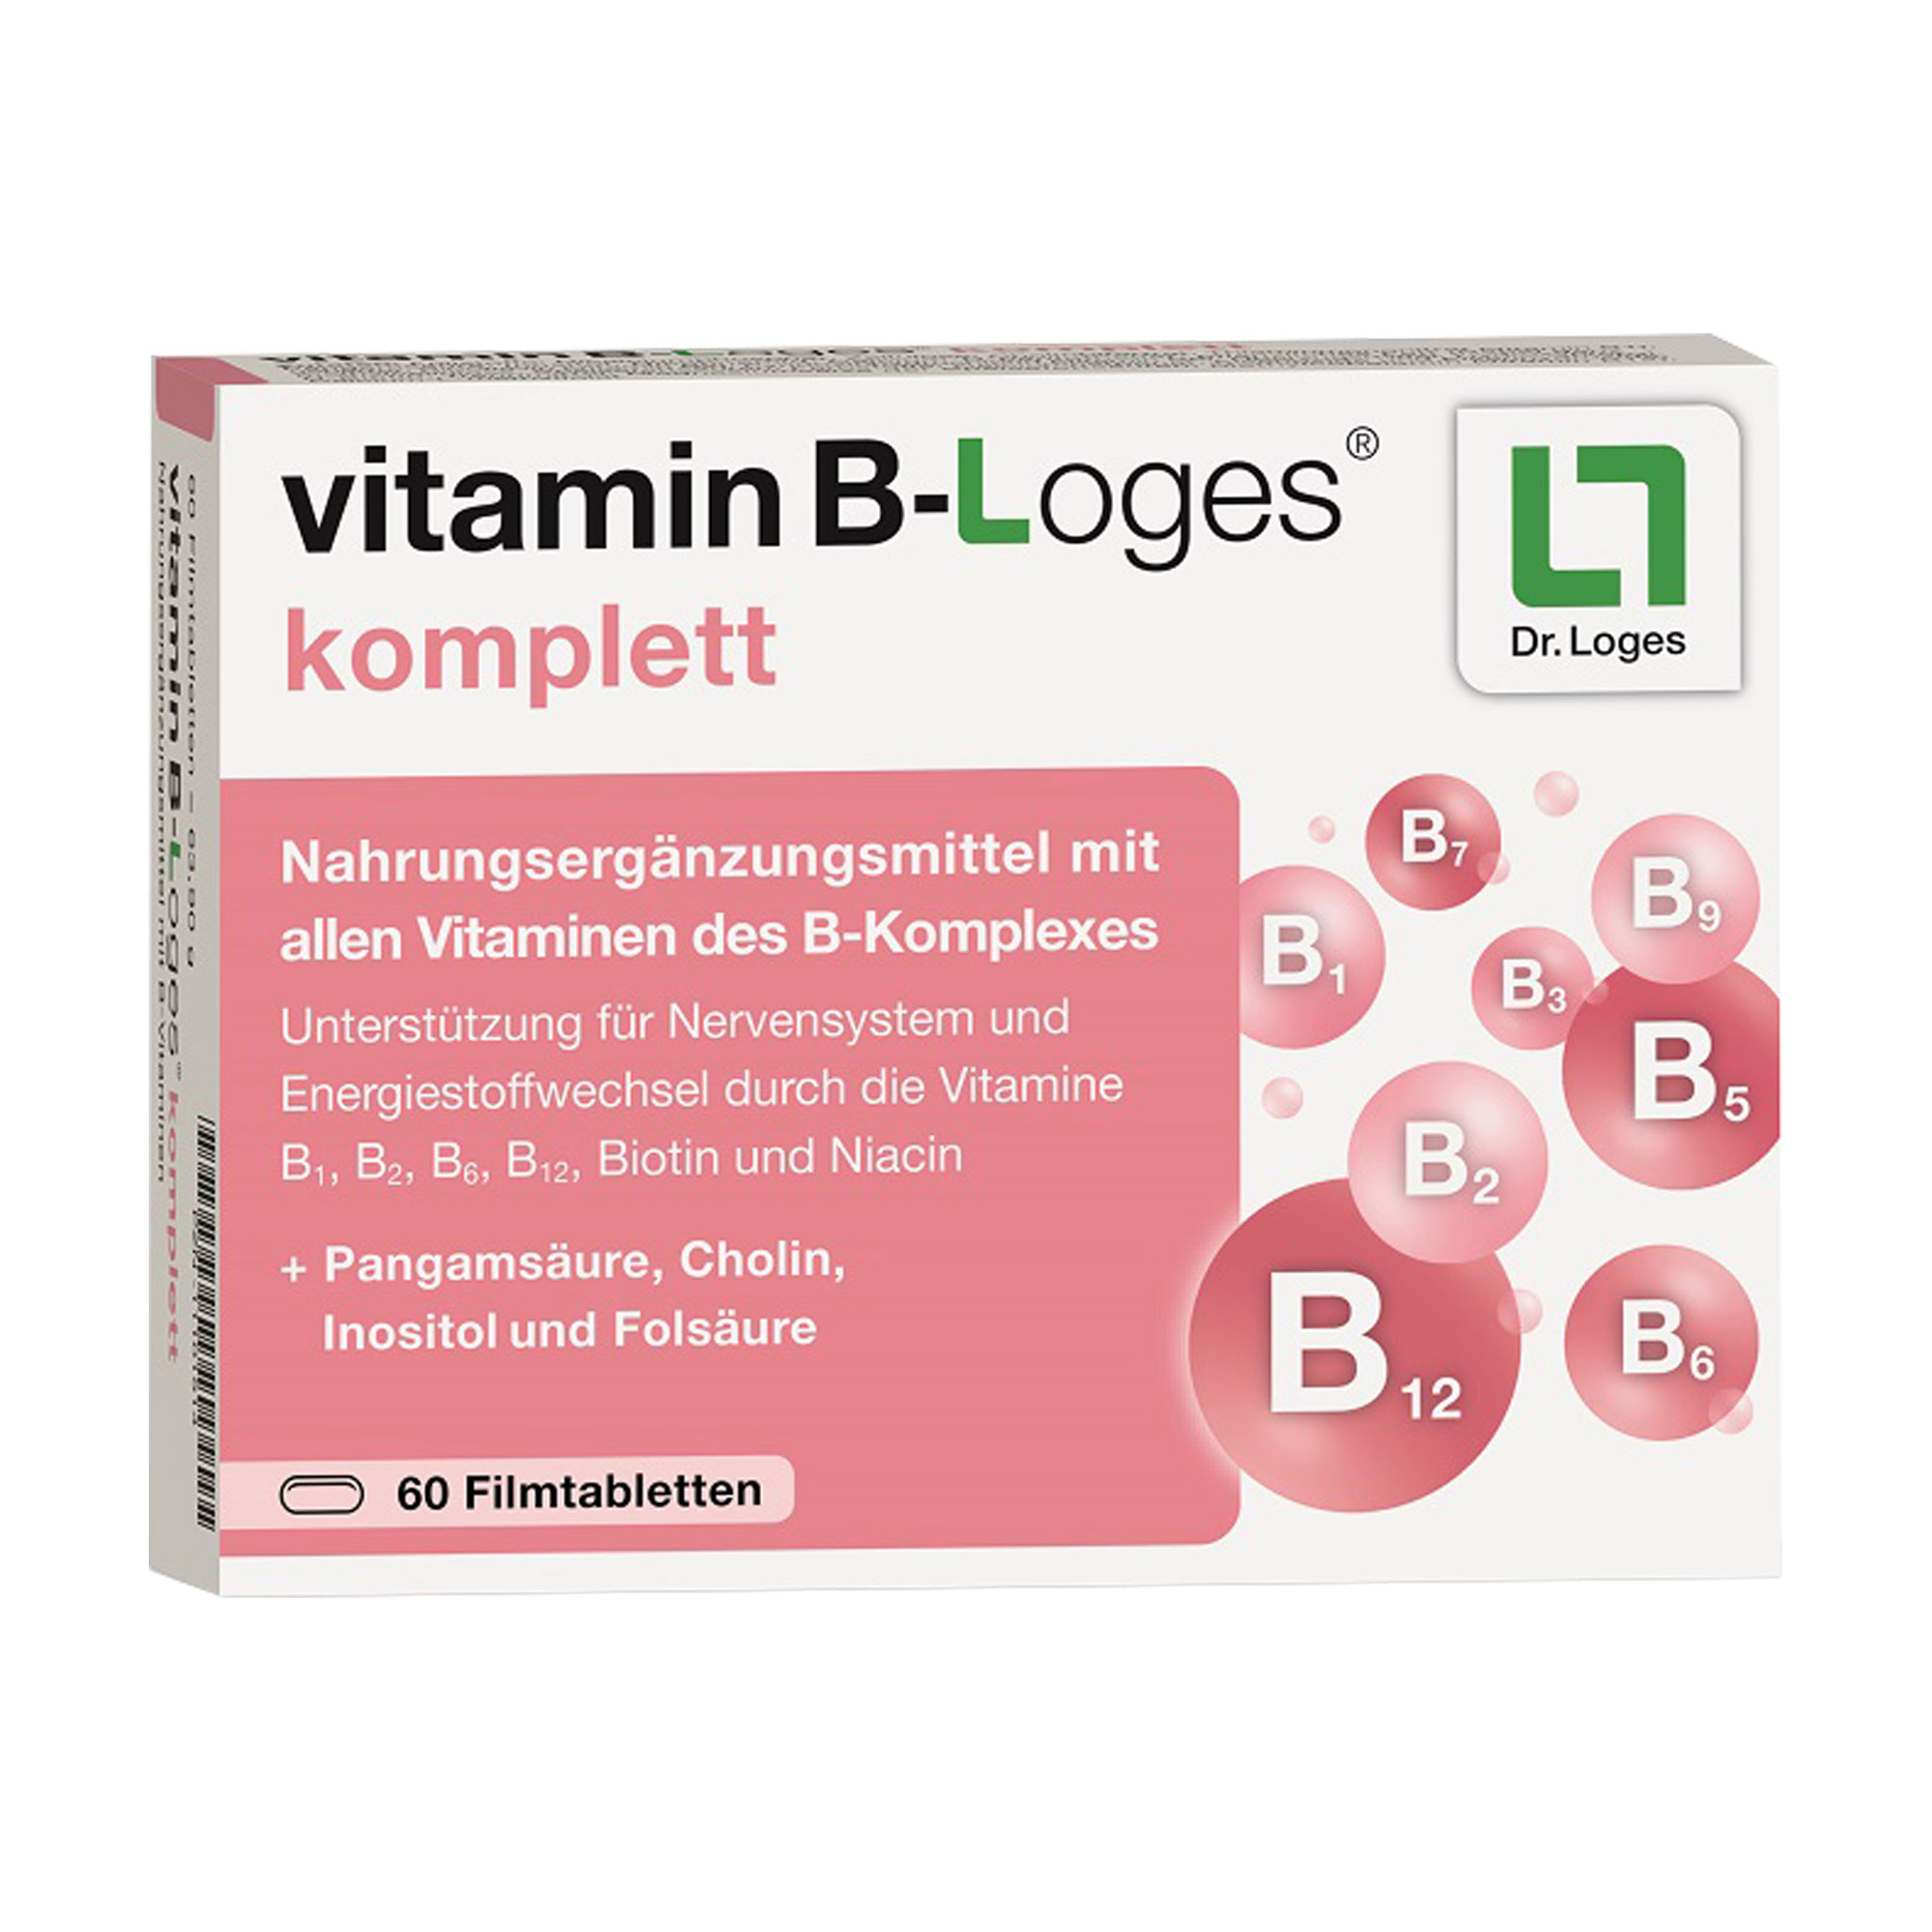 Nahrungsergänzungsmittel mit allen wichtigen Vitaminen des B-Komplexes.